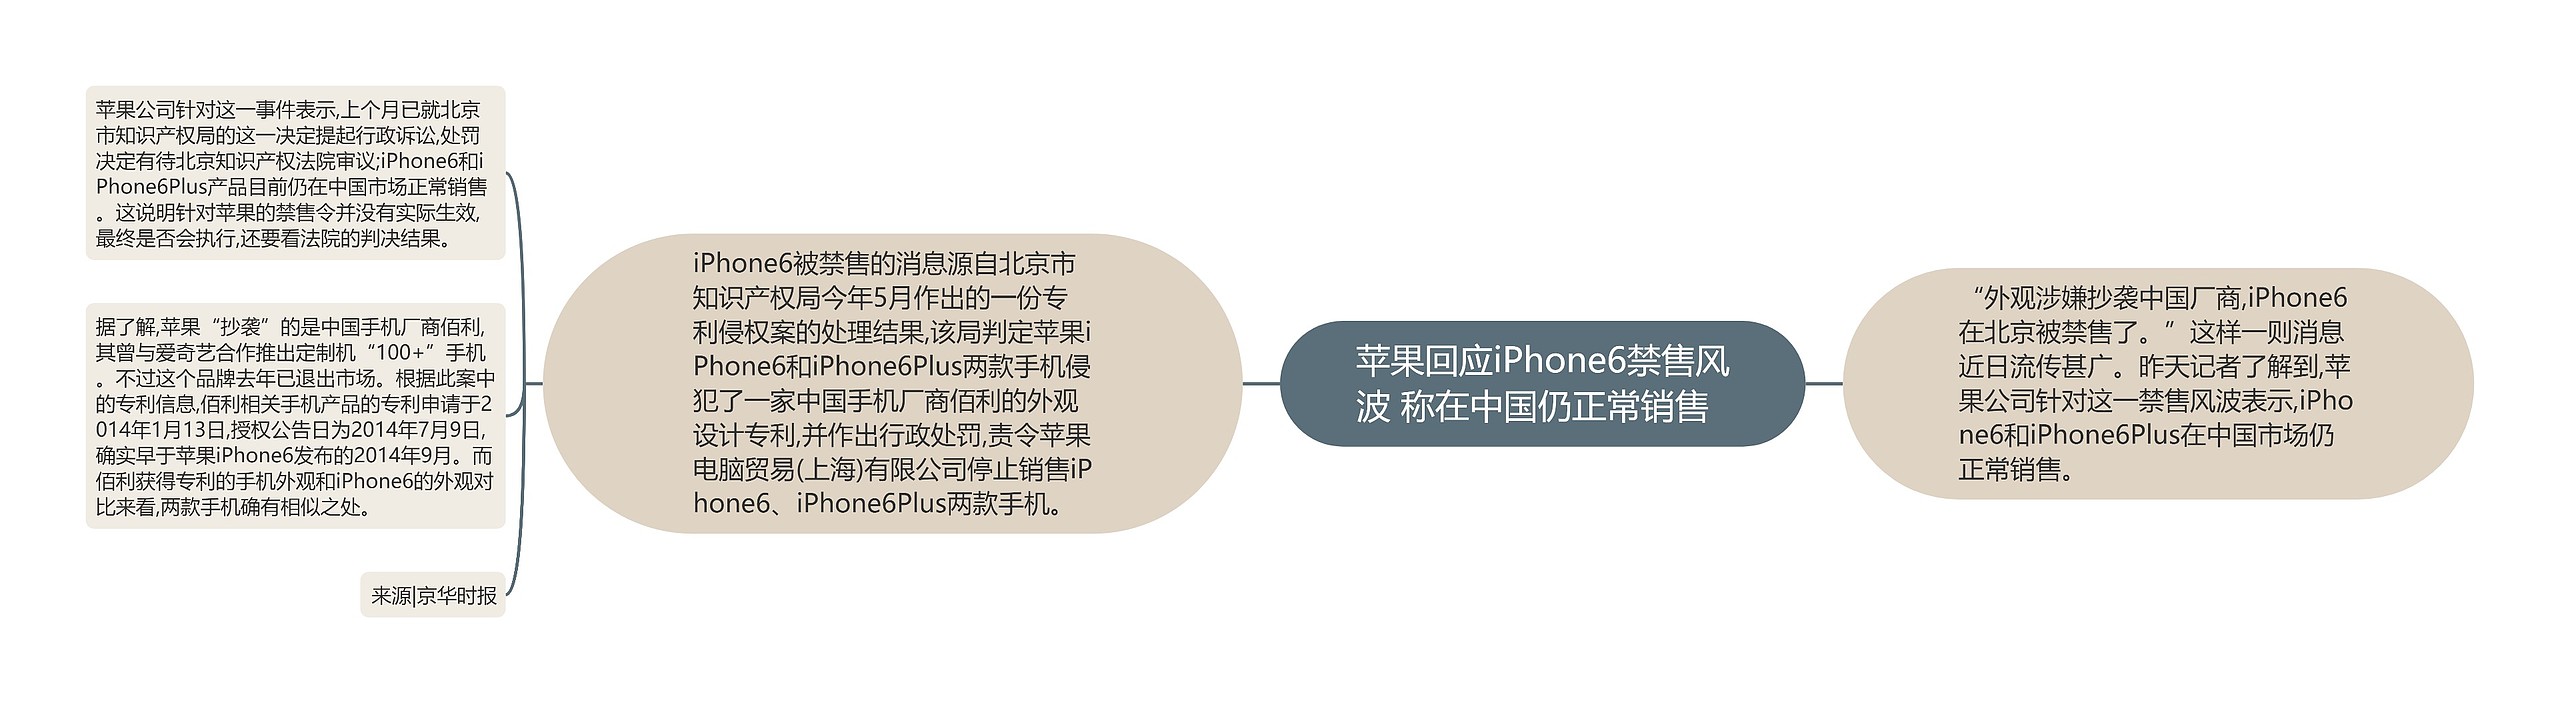 苹果回应iPhone6禁售风波 称在中国仍正常销售  思维导图